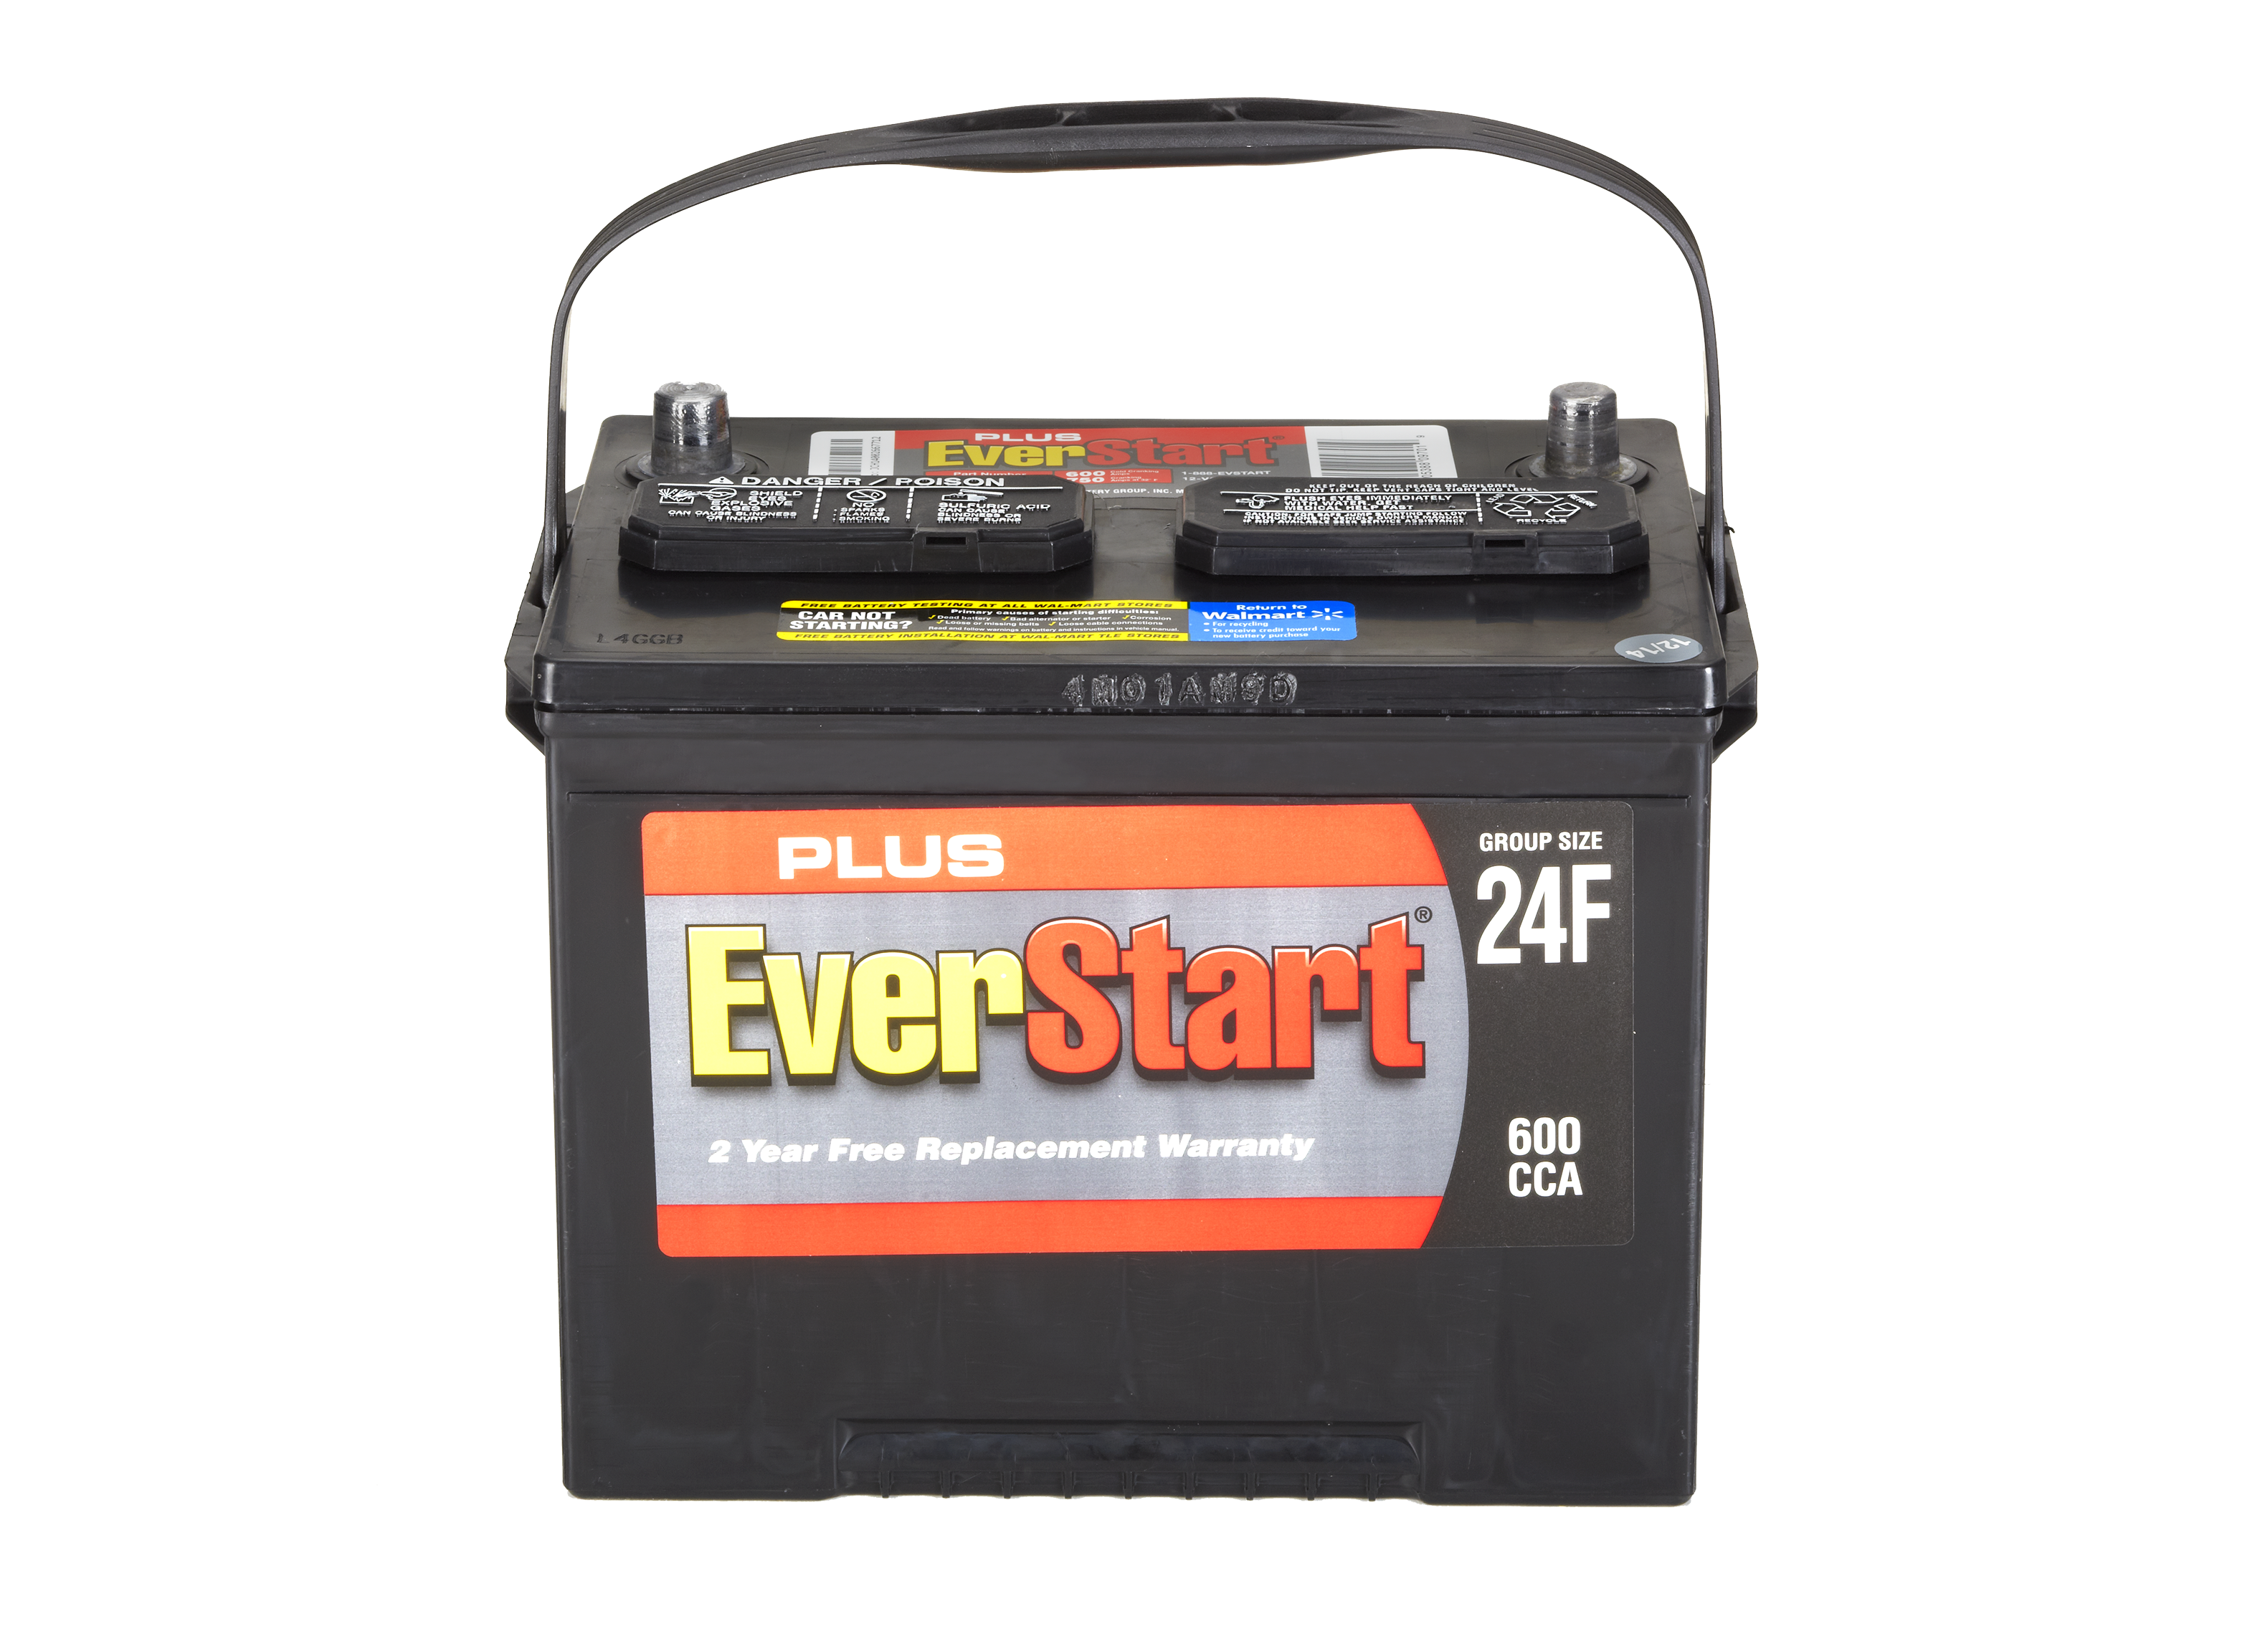 Everstart Maxx аккумулятор. MRD lx1f Battery. A015f Battery. Uplus Battery. F battery